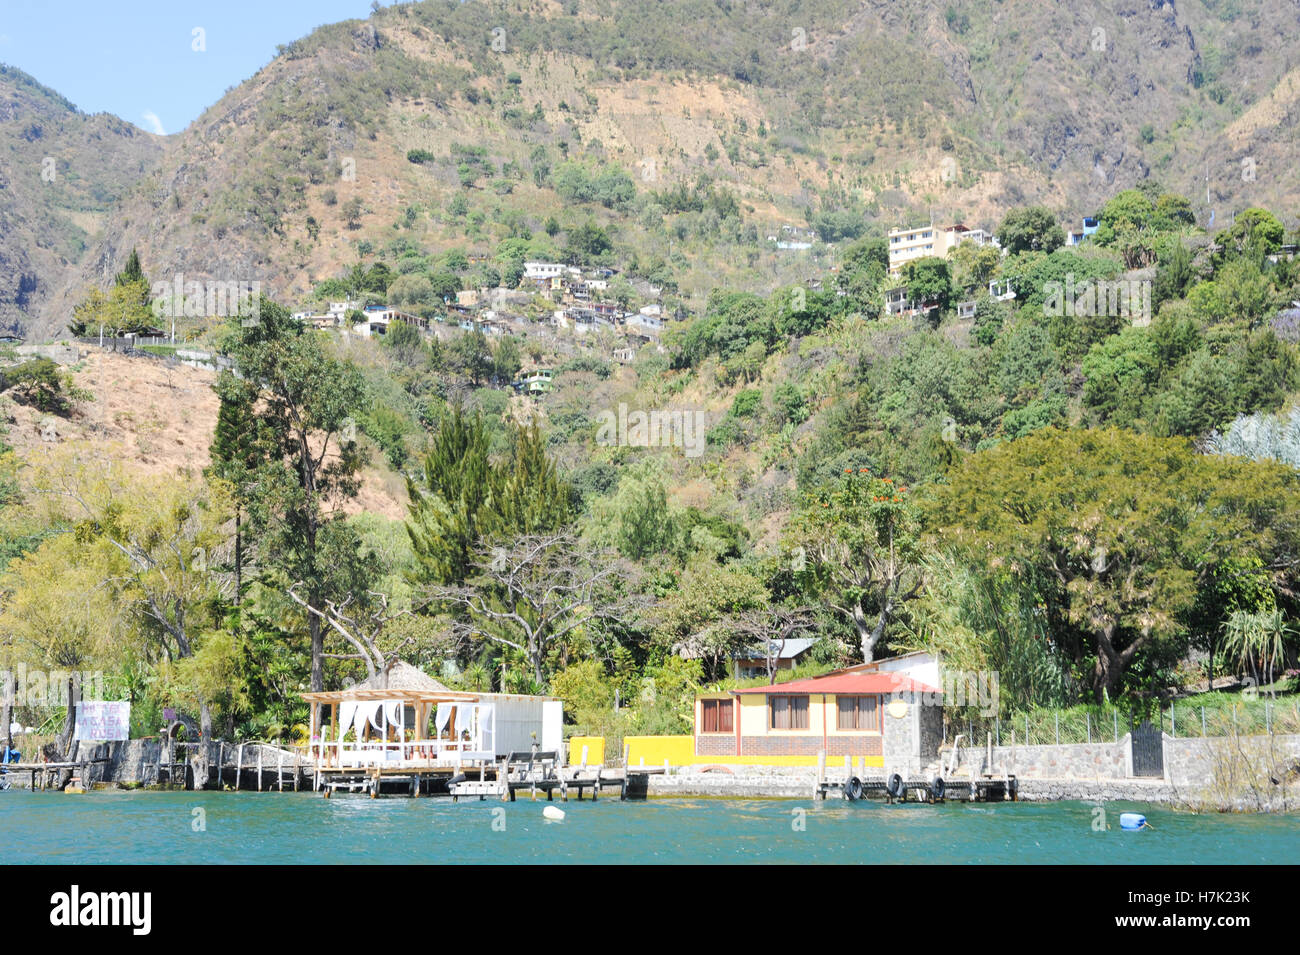 Le village de San Jorge la laguna sur le lac Atitlan, Guatemala Banque D'Images